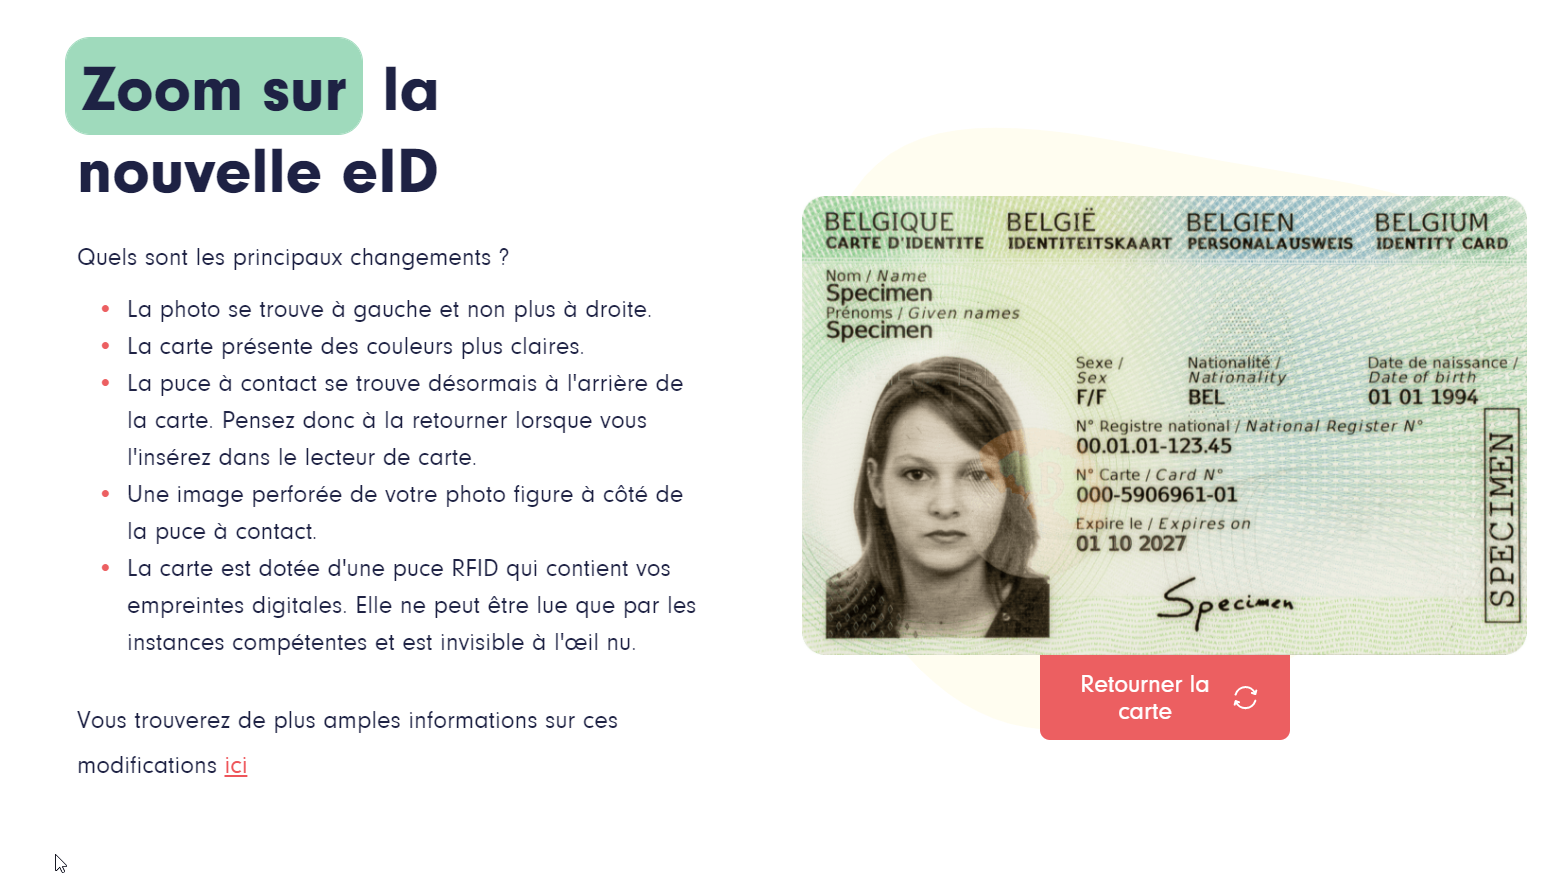 eID new identity card